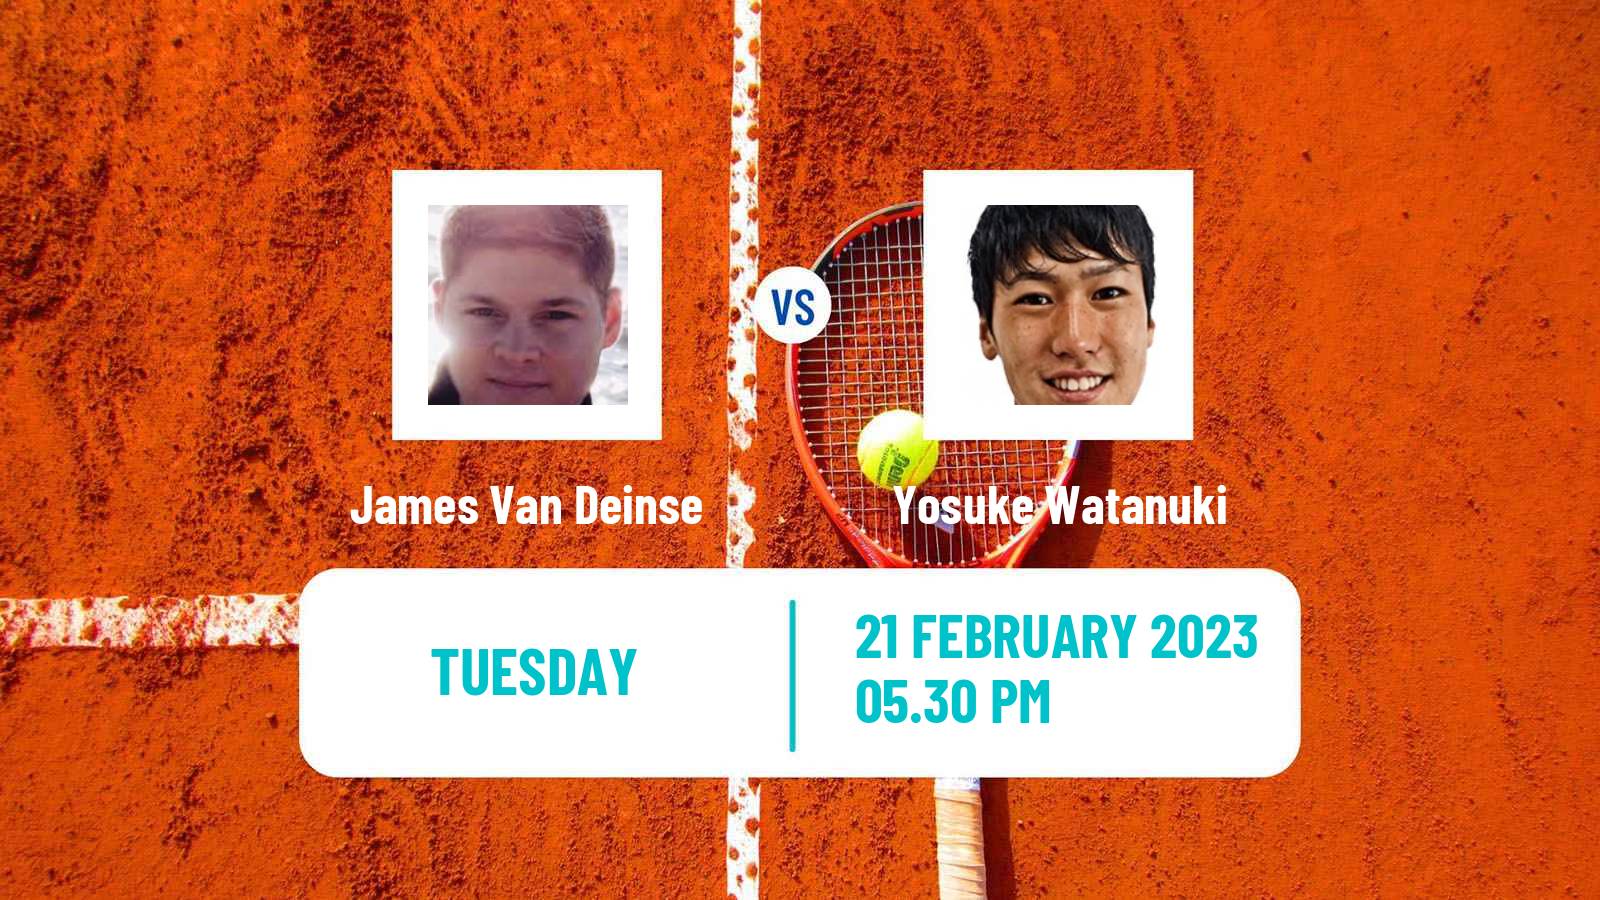 Tennis ATP Challenger James Van Deinse - Yosuke Watanuki